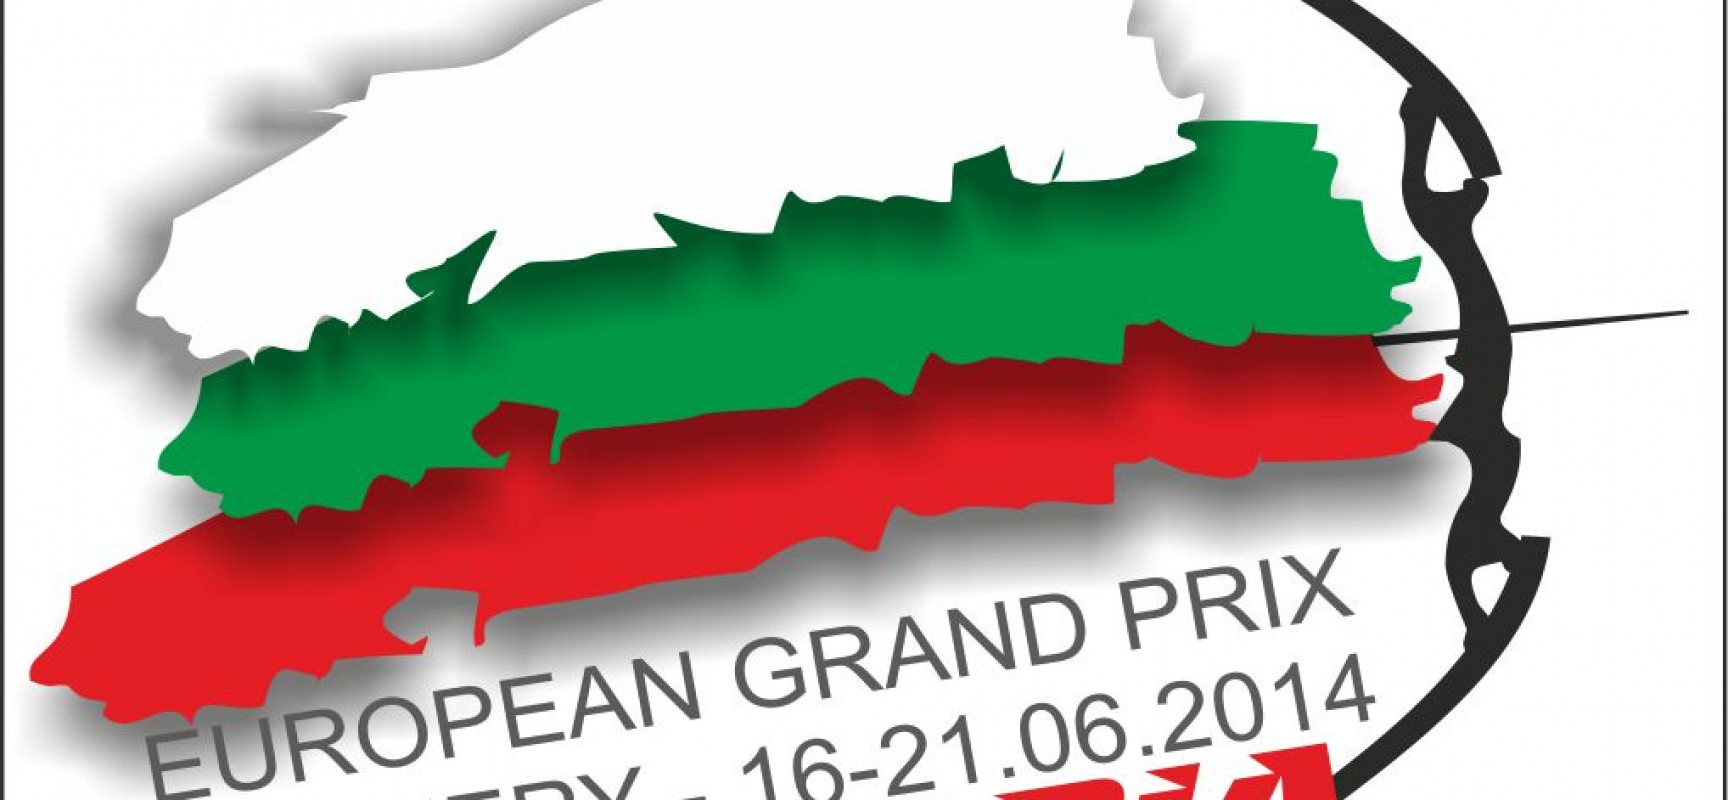 Αποστολή Εθνικής Ομάδας στο Ευρωπαϊκό Grand Prix στη Σόφια